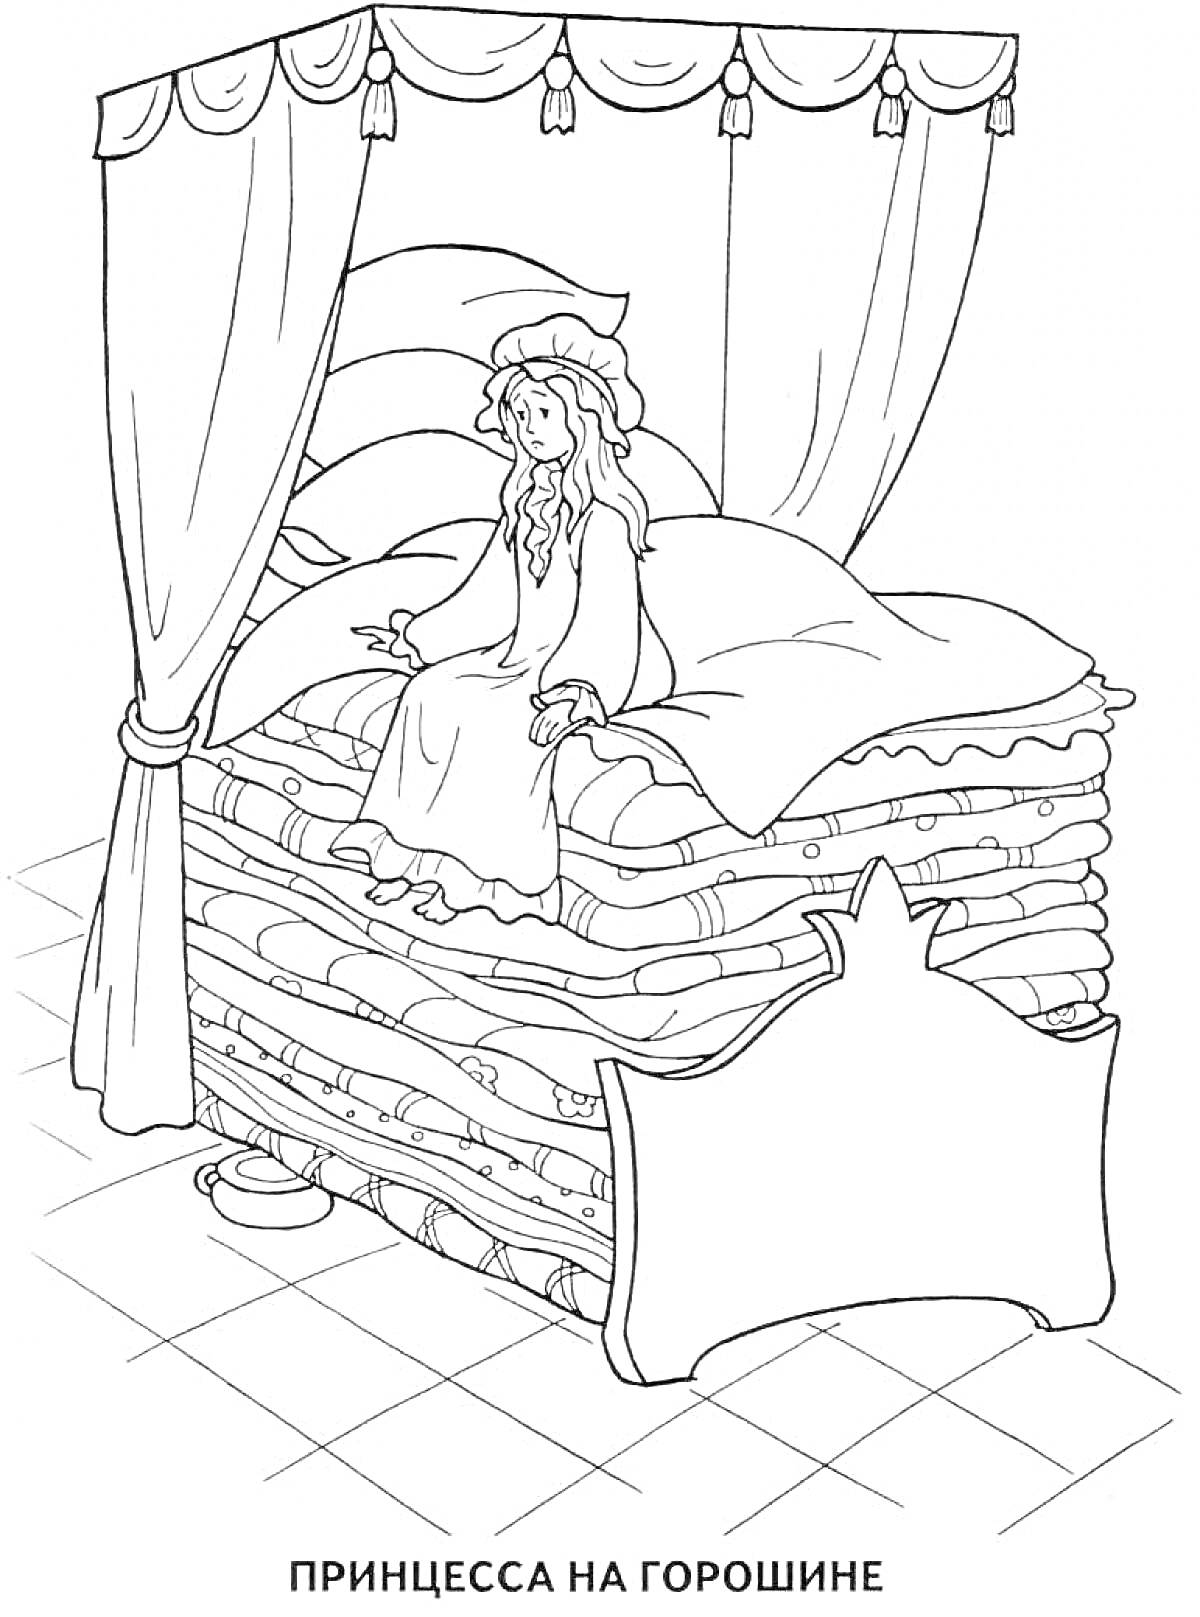 Раскраска Принцесса на горошине, сидящая на кровати с большим количеством матрасов, пол, занавески, кровать с изголовьем, маленькая миска с горошиной